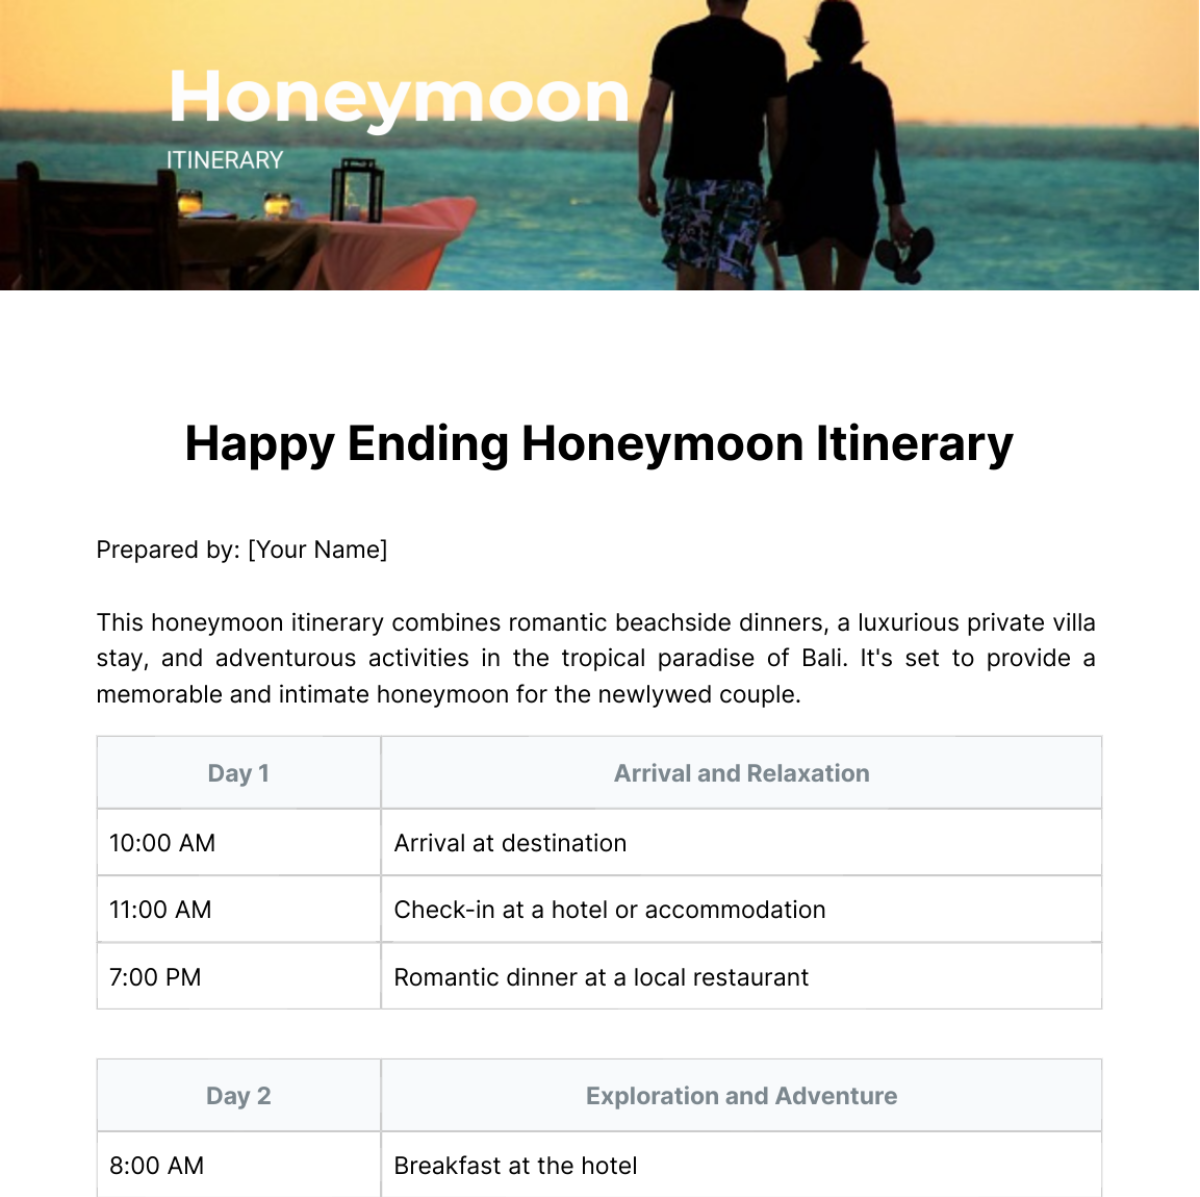 Honeymoon Itinerary Template